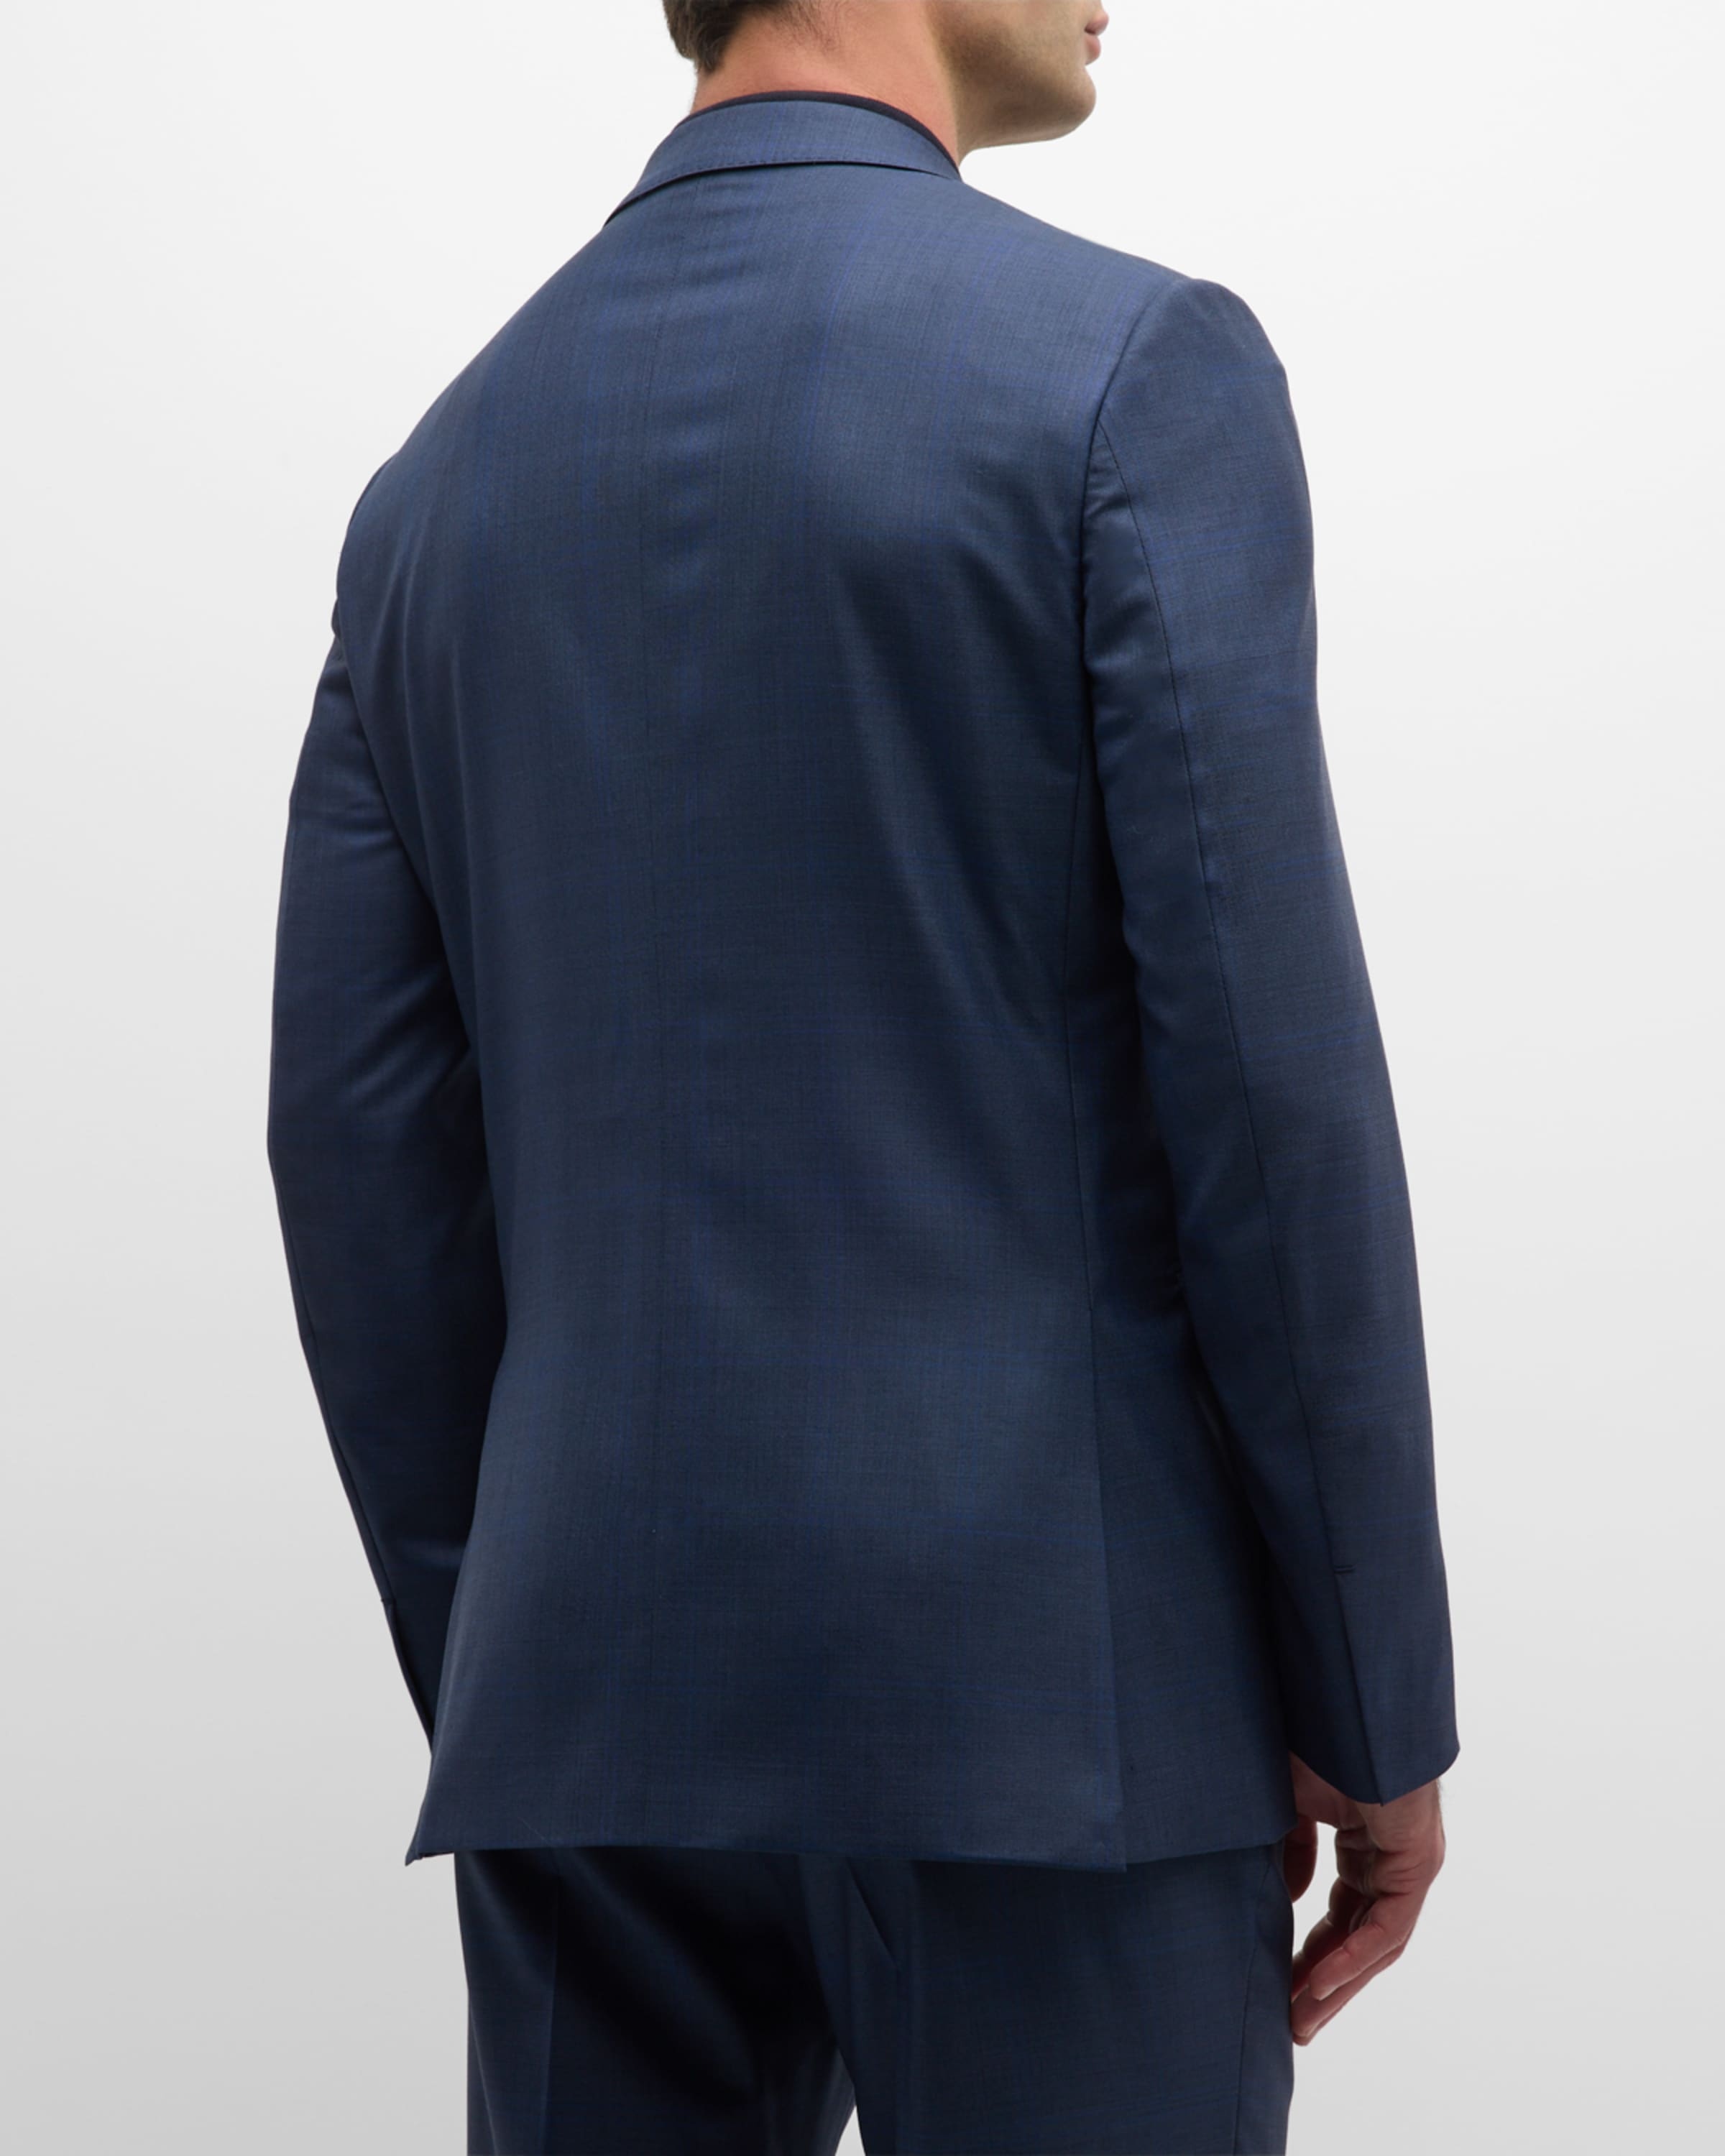 Men's Plaid 15milmil15 Wool Suit - 6